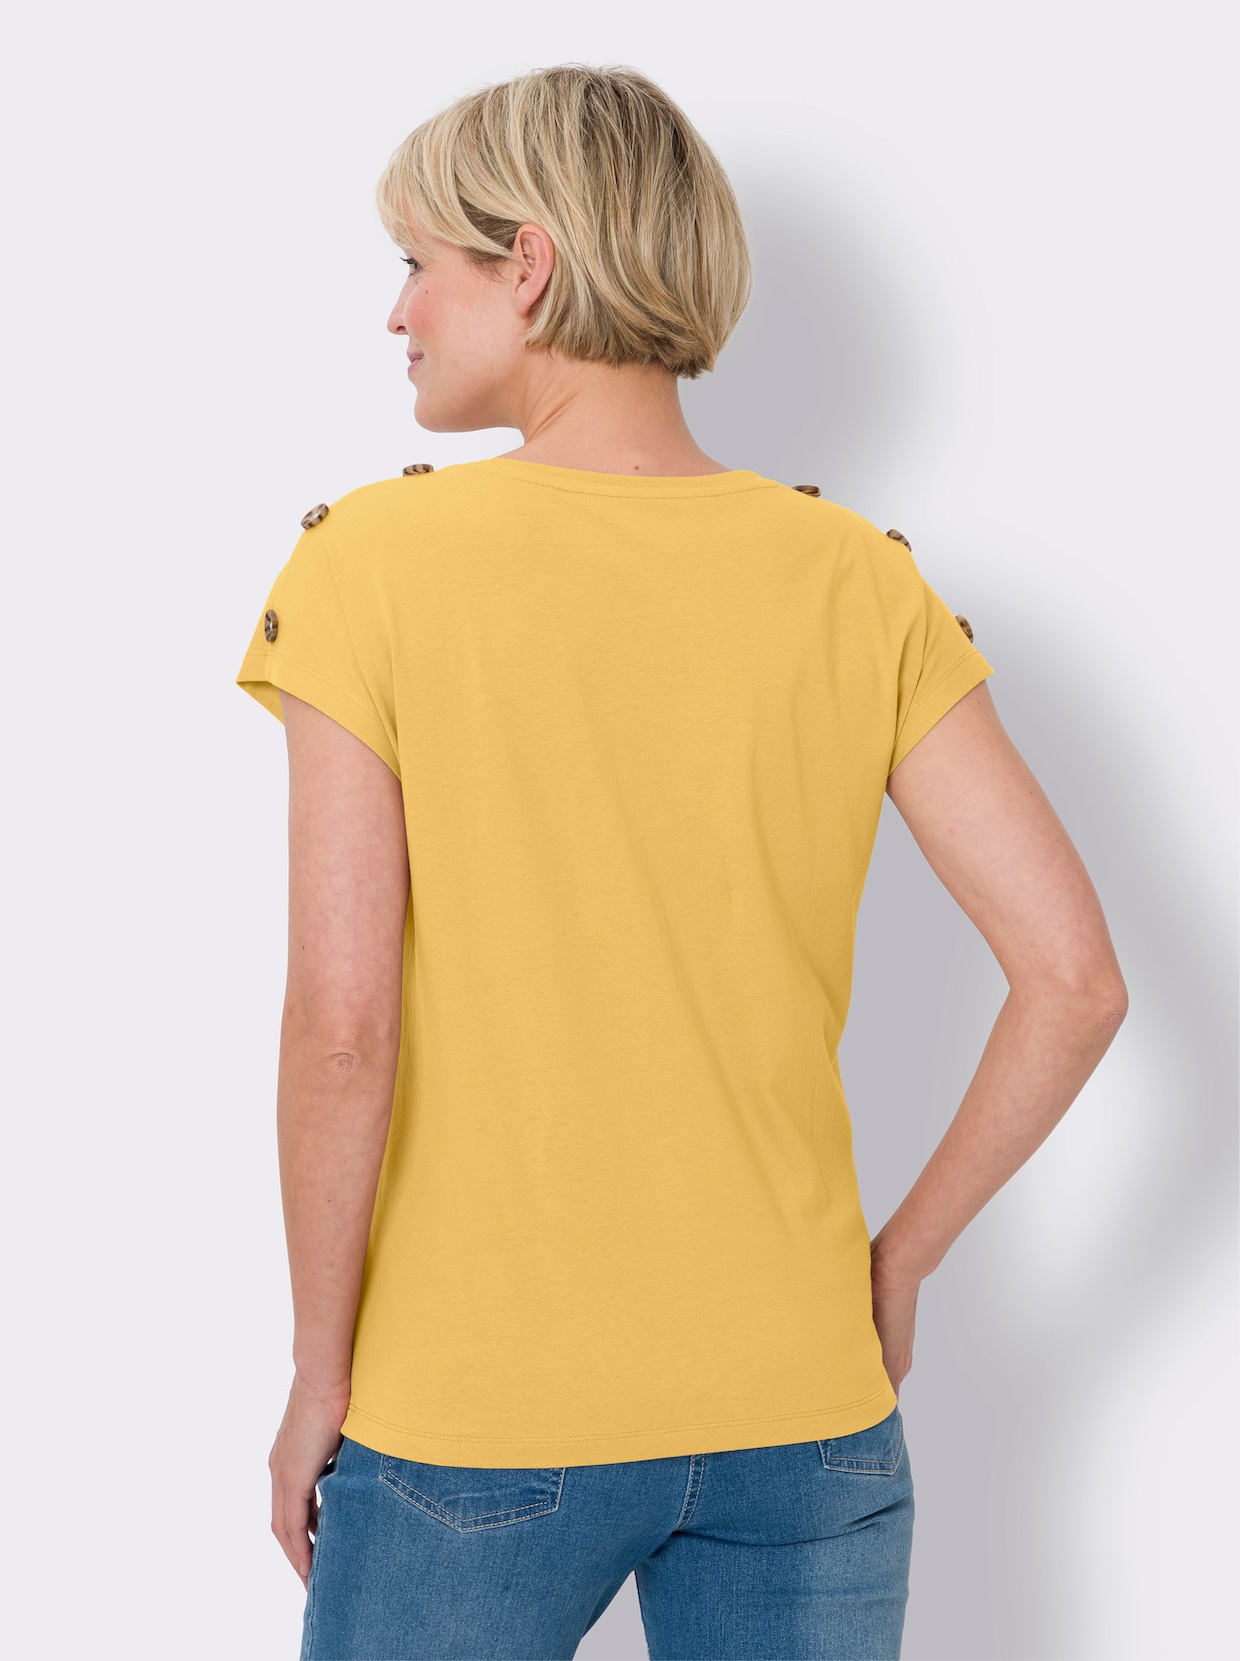 Tričko s krátkým rukávem - žlutá